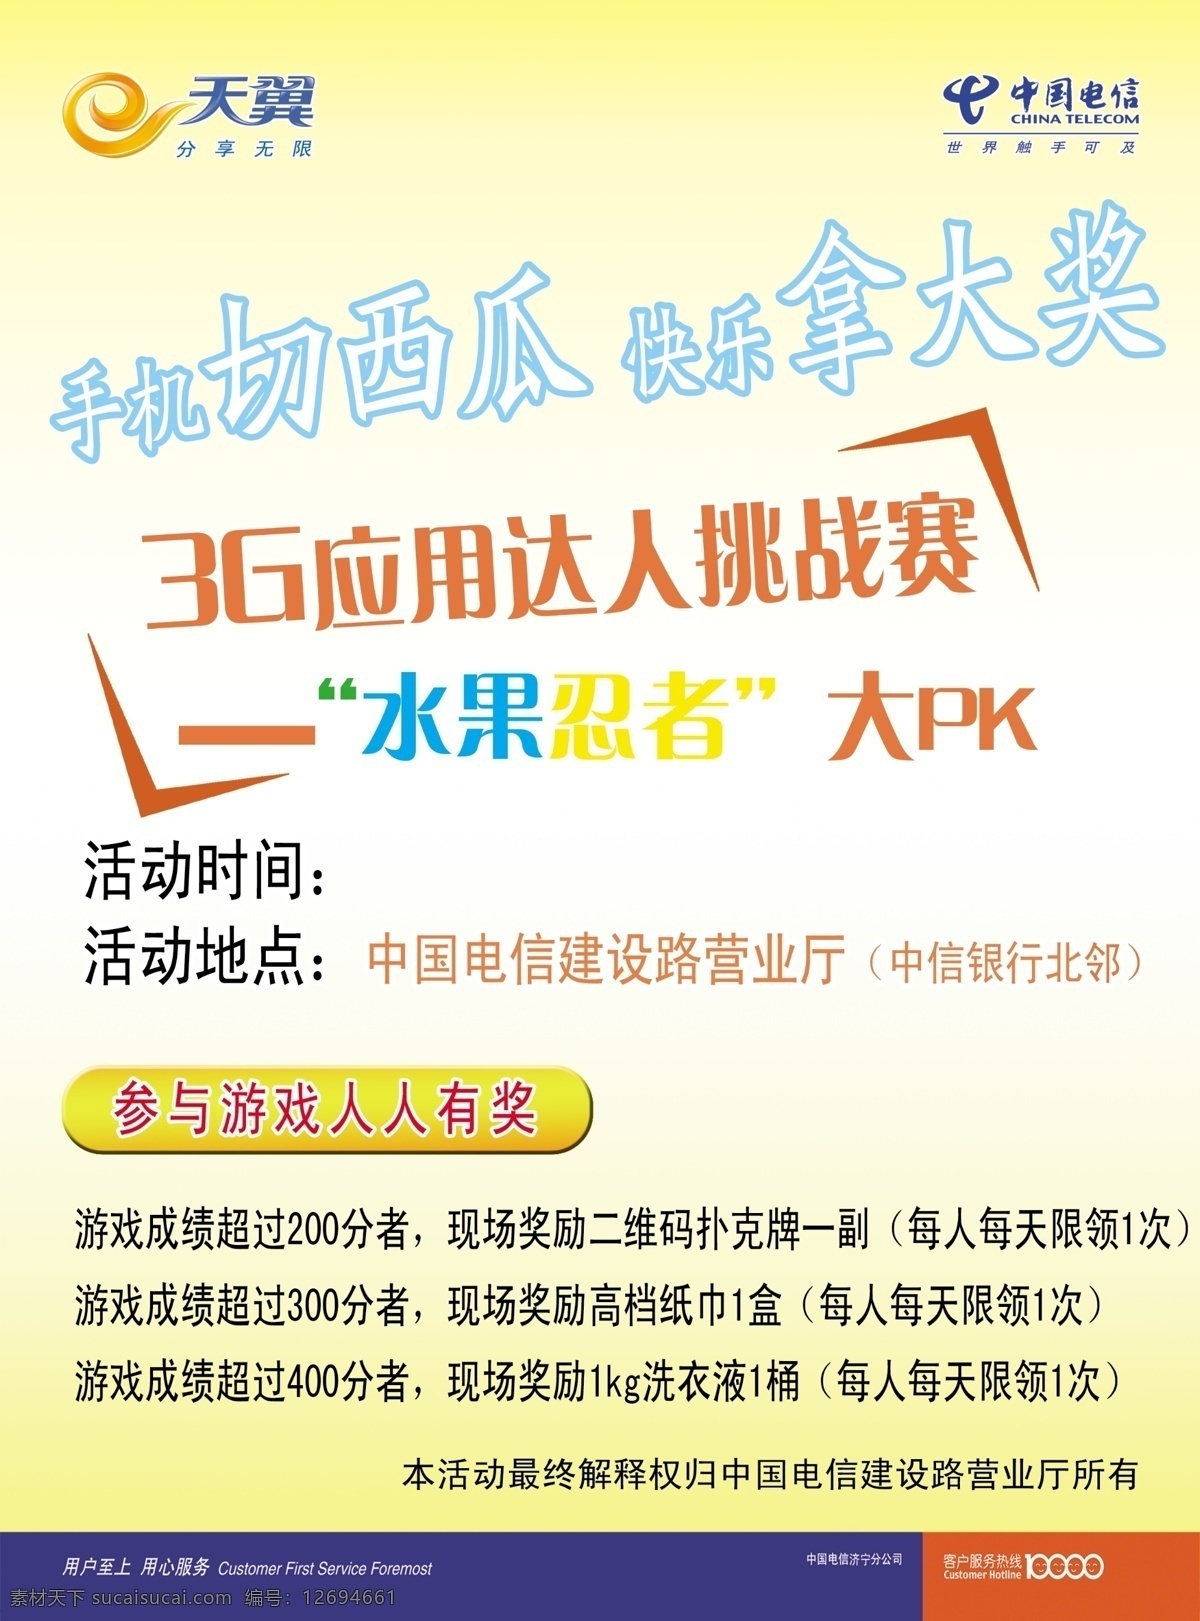 中国电信 宣传单 dm宣传单 广告设计模板 水果忍者 源文件 3g通信 3g 应用 达人 挑战赛 矢量图 现代科技